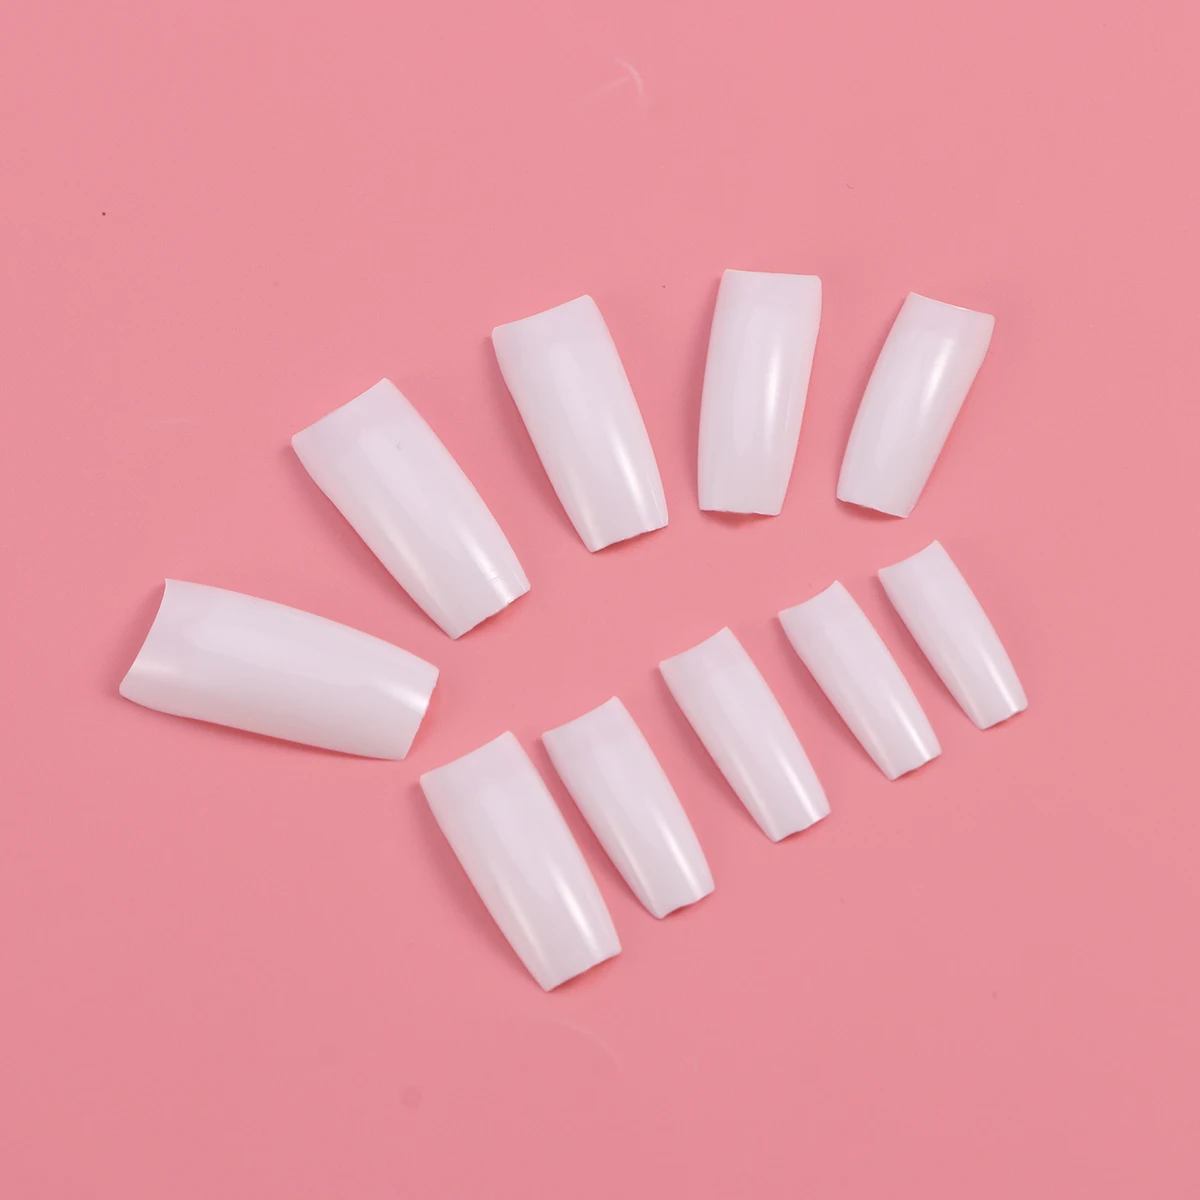 500 шт Французский стиль поддельные ногти натуральный цвет Искусственные полное покрытие накладные ногти(белый